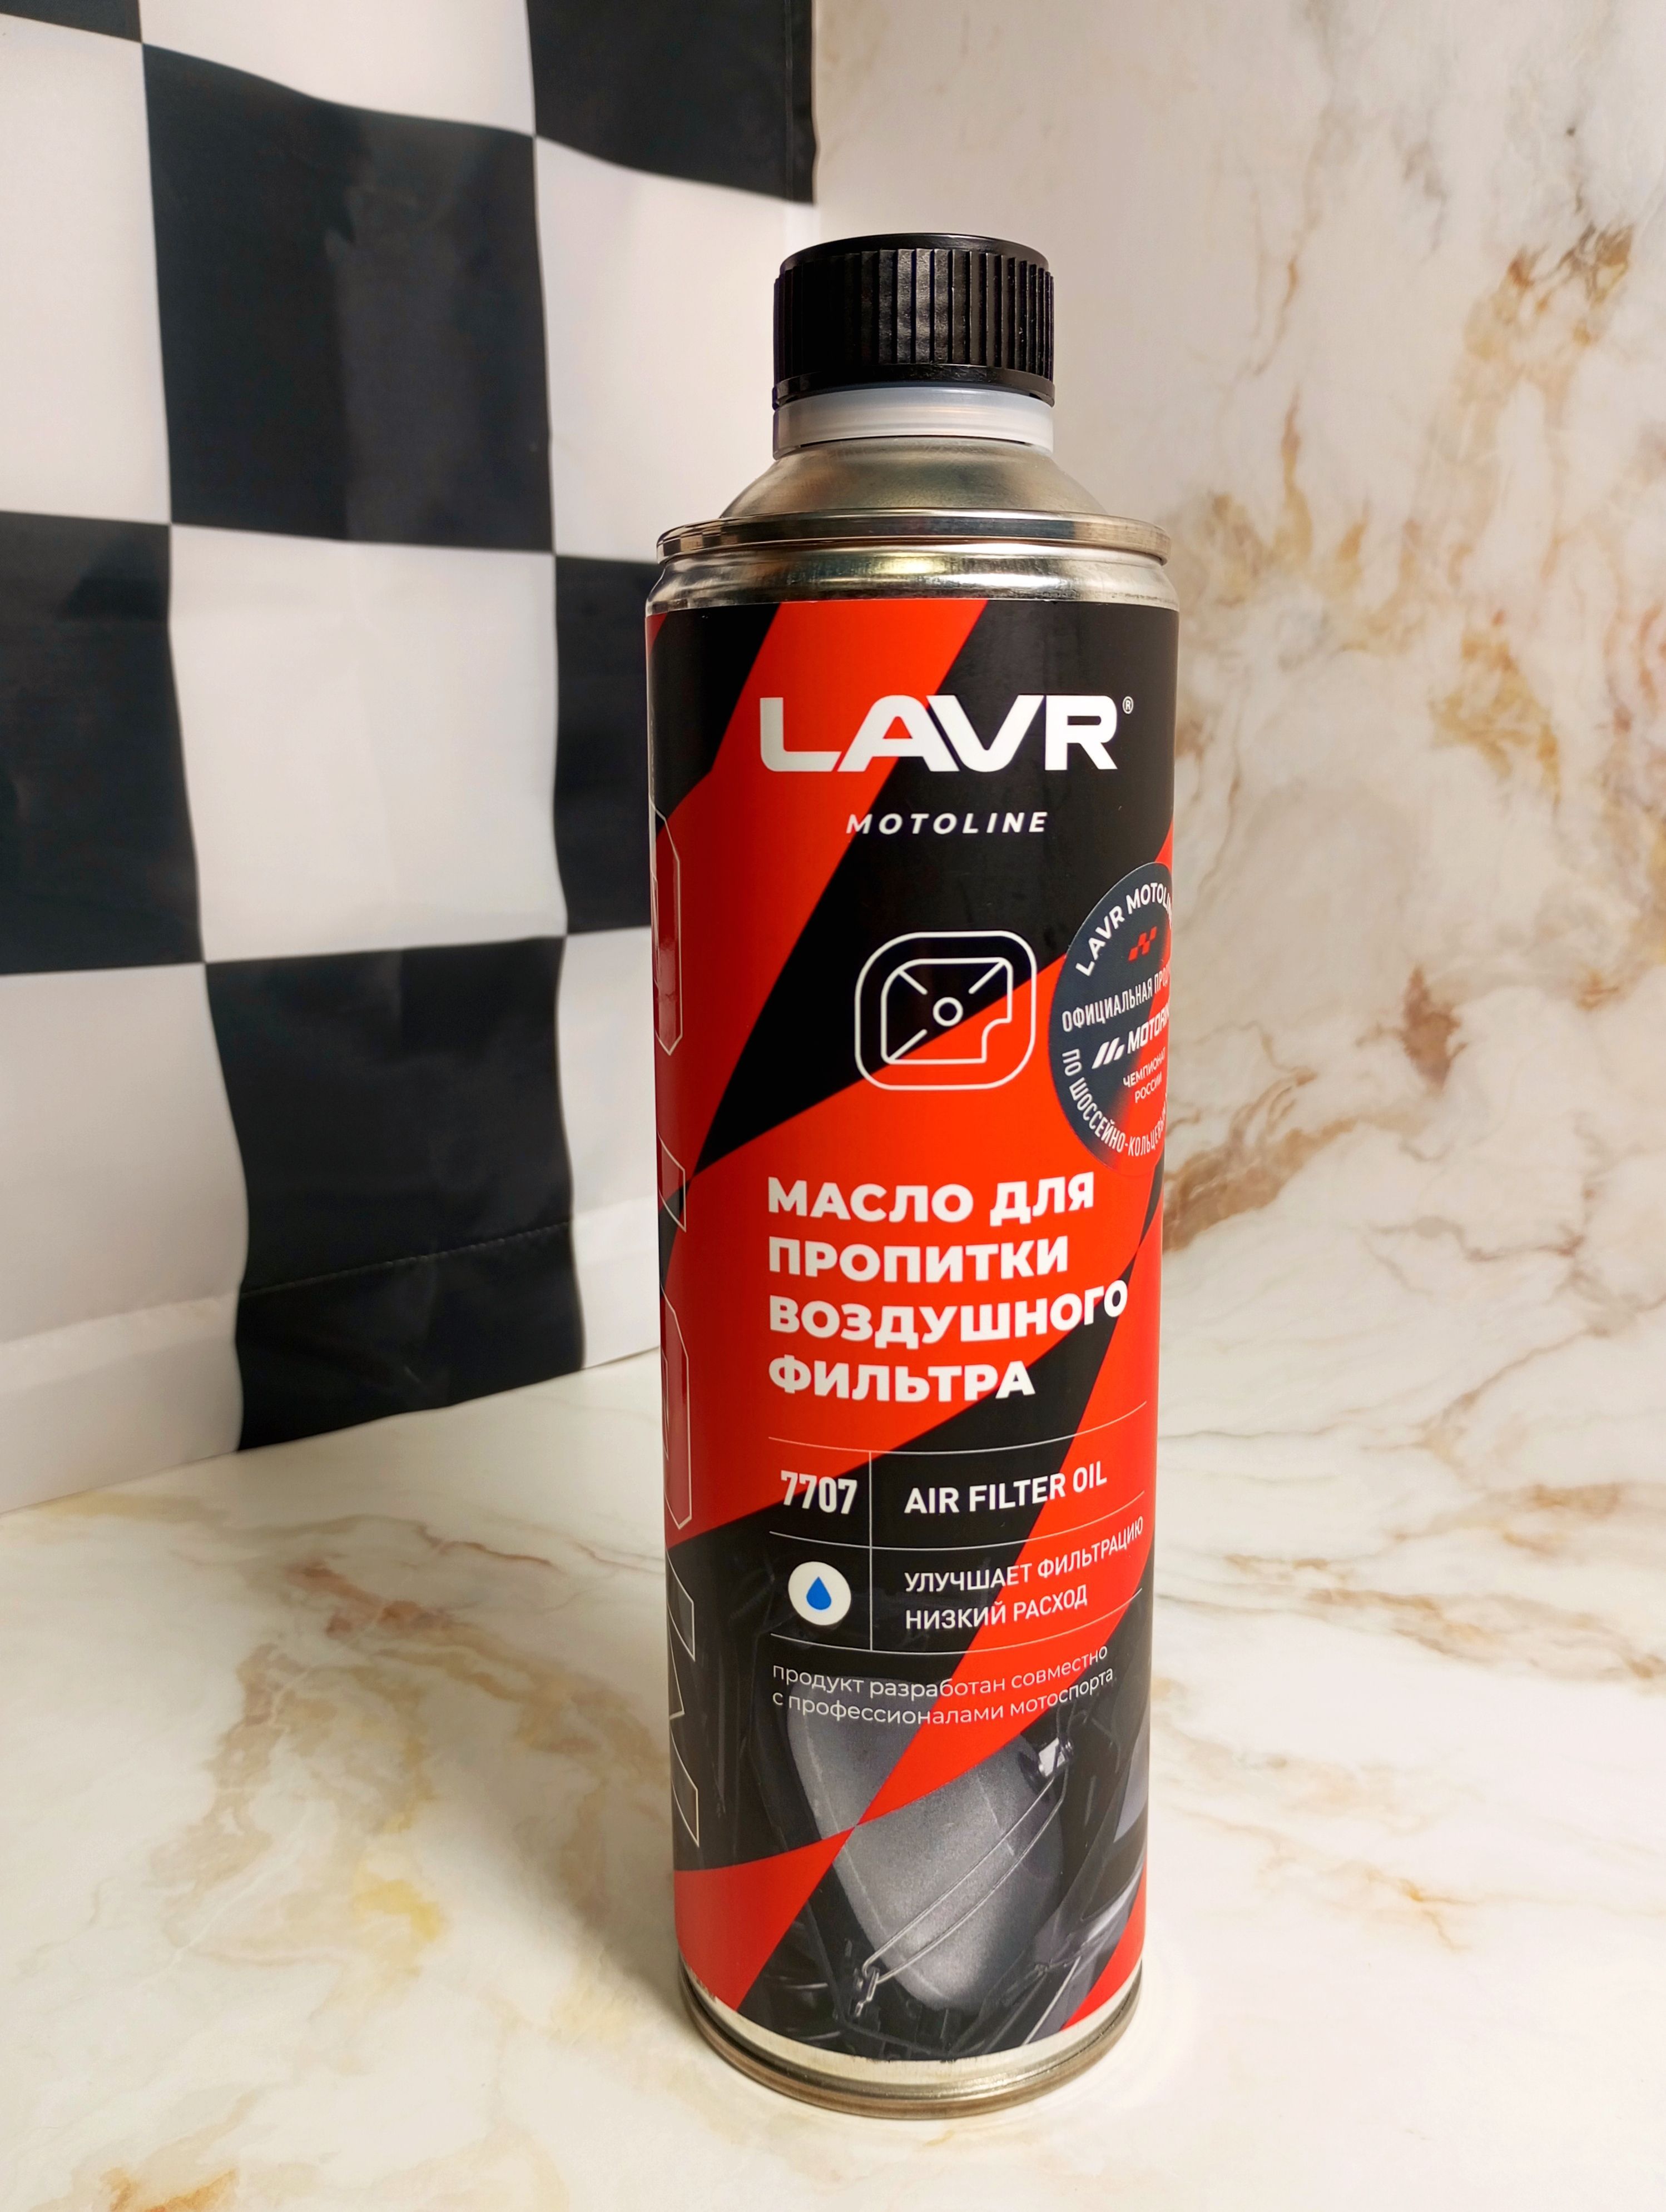 LAVR Motoline Air Filter Oil Масло для пропитки воздушного фильтра 580 мл